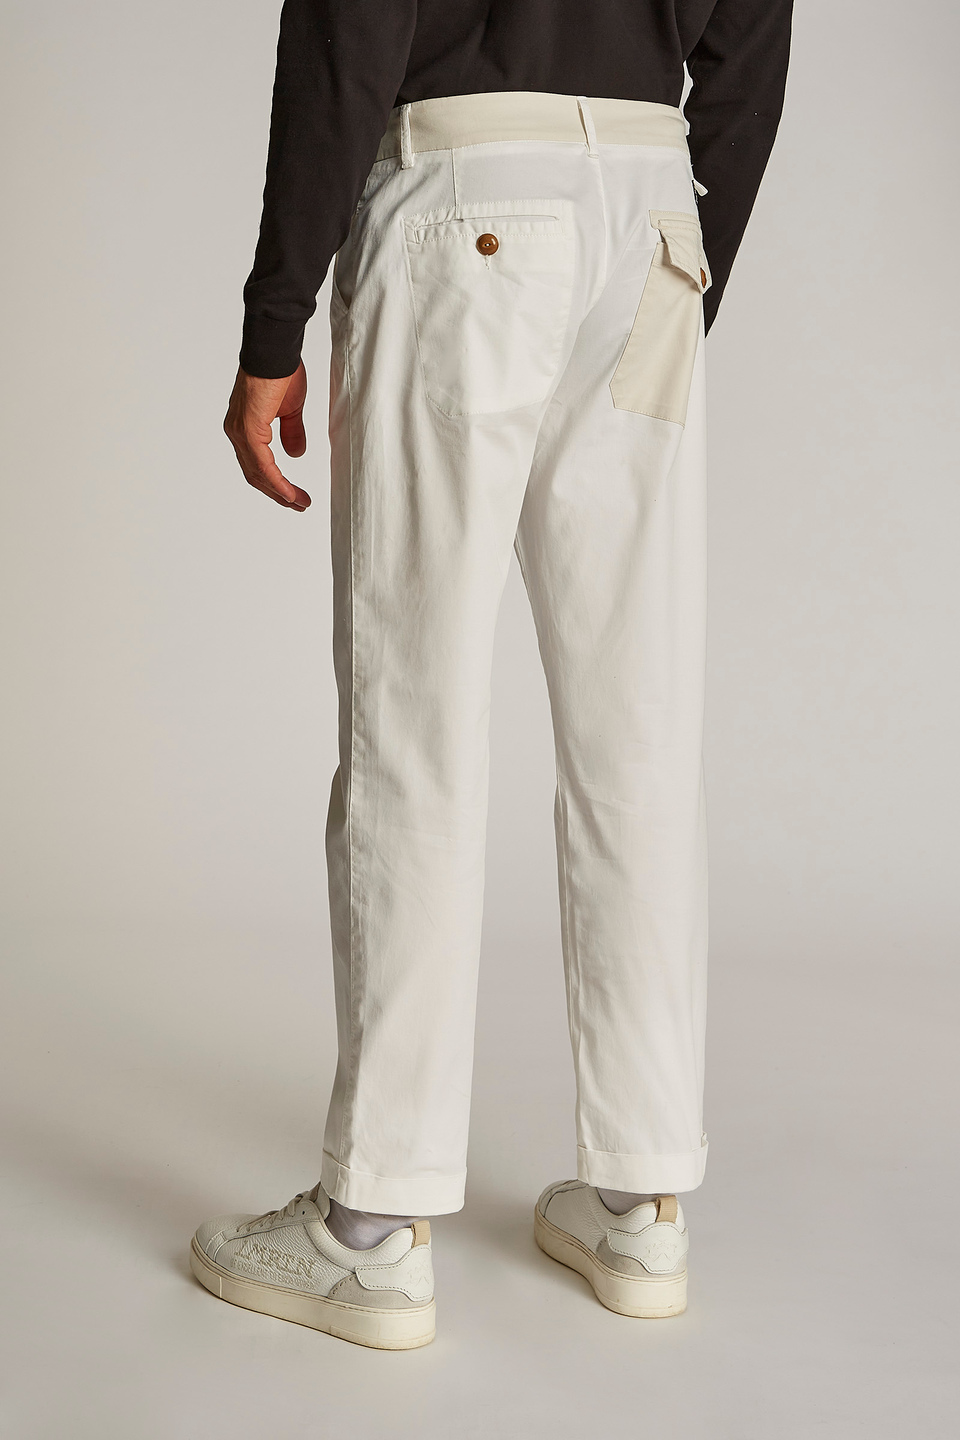 Pantalón de hombre de algodón mezcla de lino, corte regular - La Martina - Official Online Shop